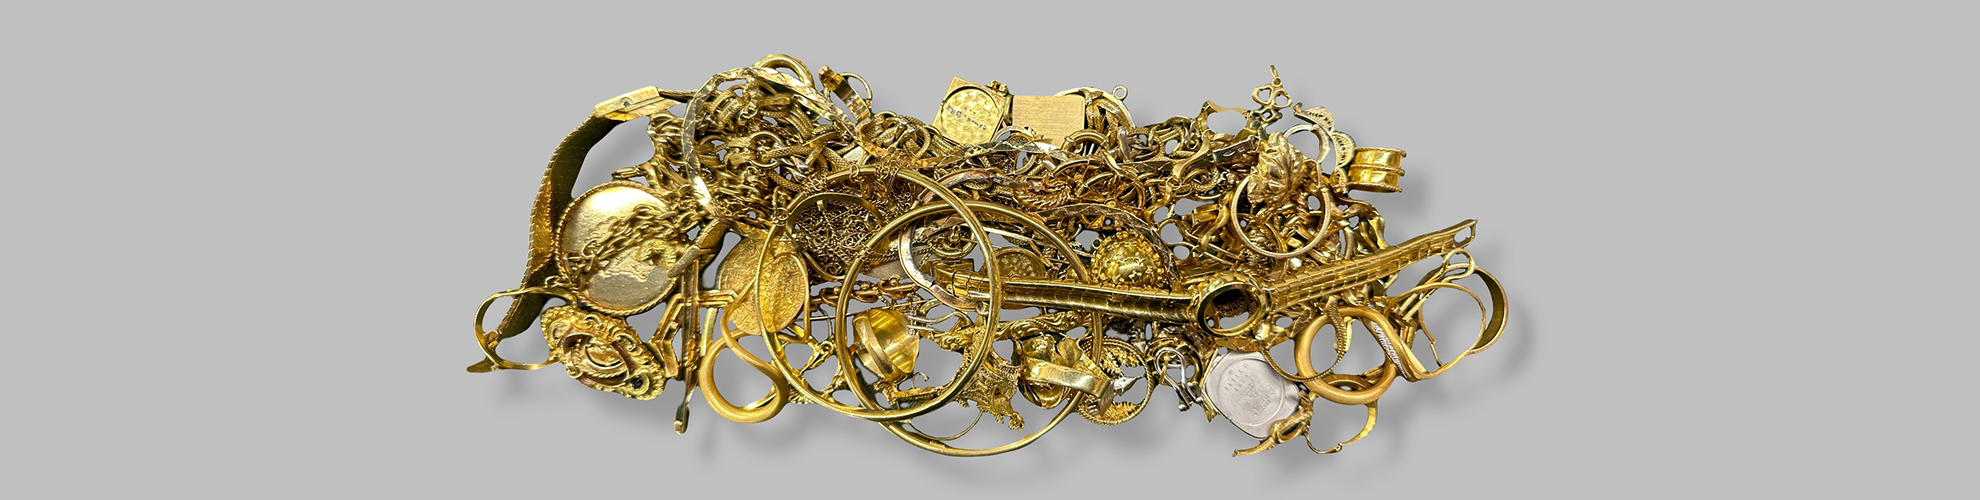 Altgoldschmuck. Wertvolle Juwelen in einer funkelnden Masse. Luxus und Reichtum vereint.